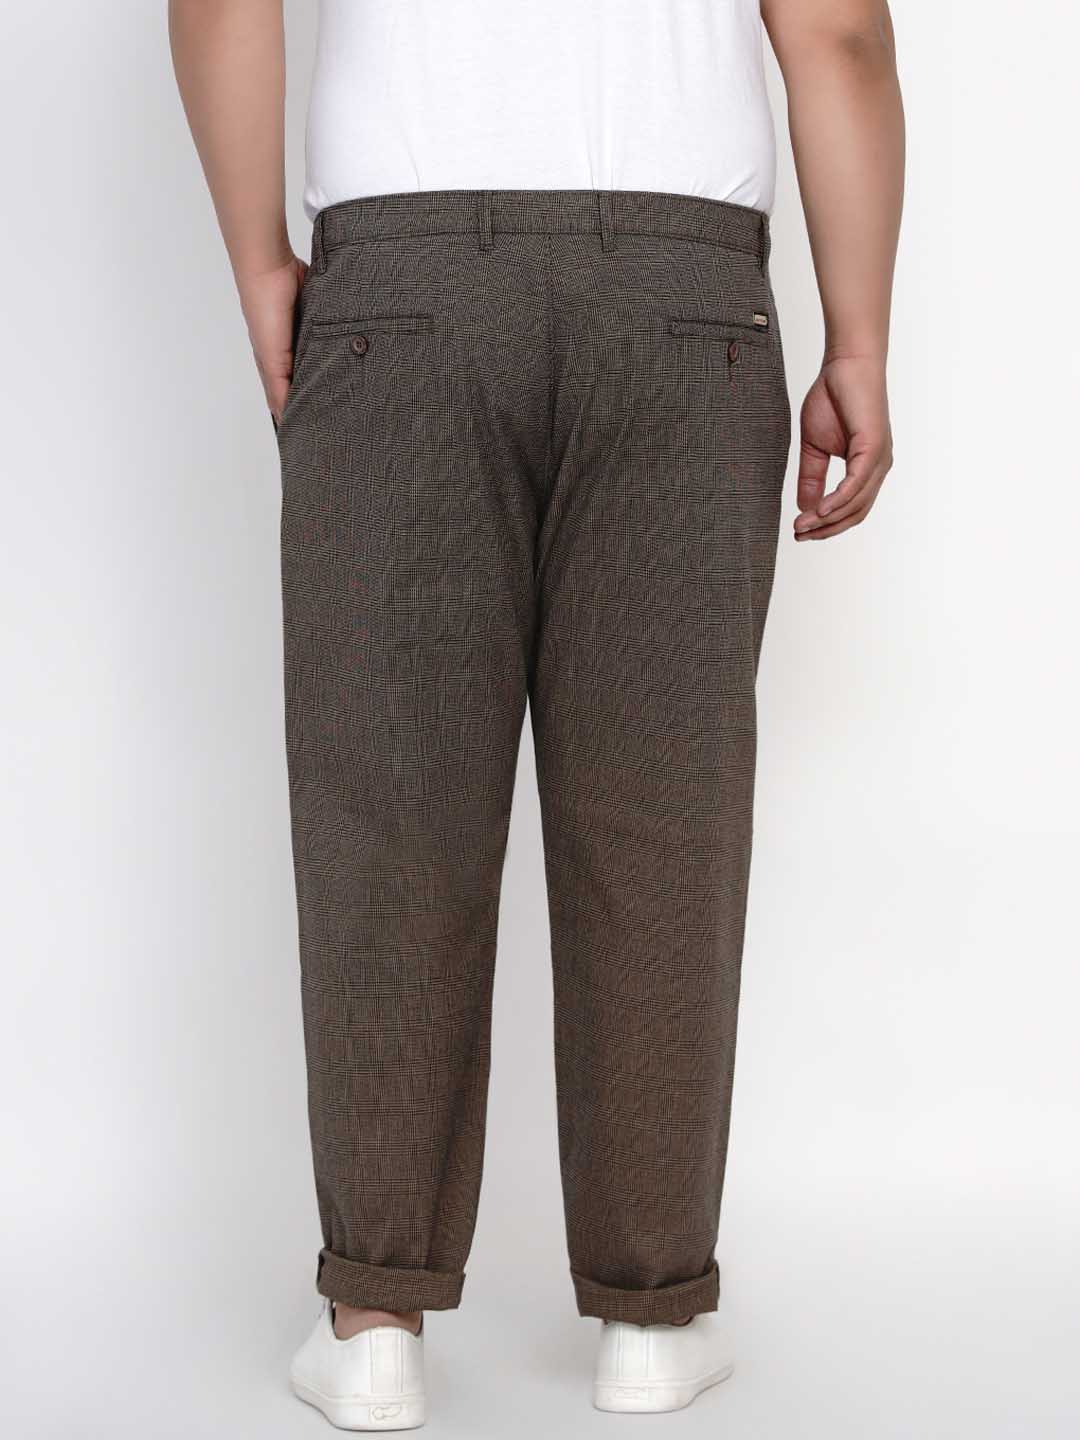 bottomwear/trousers/JPTR2148B/jptr2148b-4.jpg